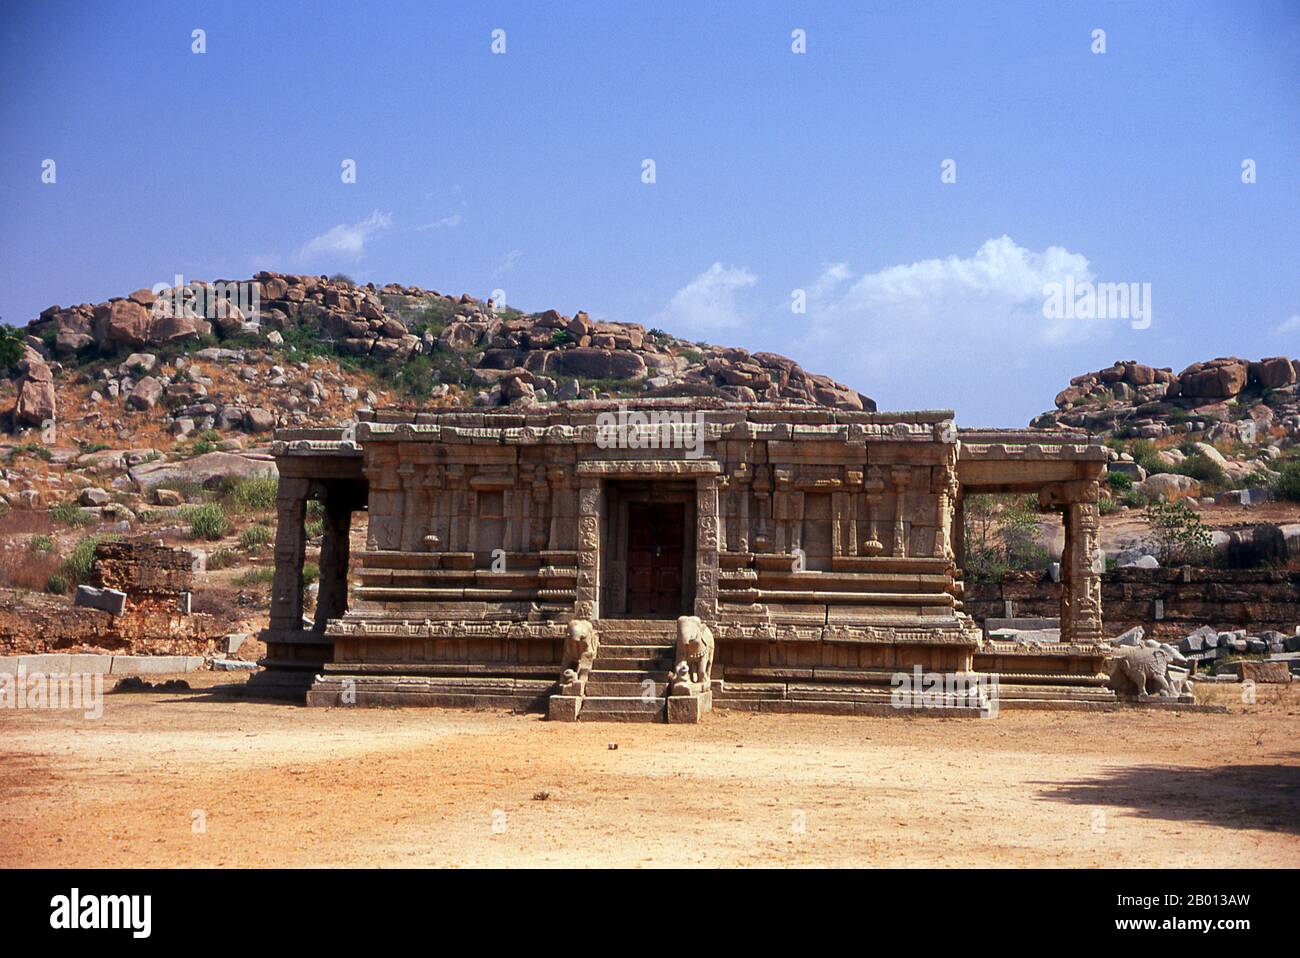 Indien: Pavillon in der Nähe des Vitthala-Tempels, Hampi, Karnataka State. Der Vittala-Tempel, der im frühen 16. Jahrhundert erbaut wurde, ist dem Hindu-gott Vithoba (auch bekannt als Vitthala und Panduranga) gewidmet, einer Inkarnation von Vishnu oder seinem Avatar Krishna. Hampi ist ein Dorf im nördlichen Bundesstaat Karnataka. Es befindet sich in den Ruinen von Vijayanagara, der ehemaligen Hauptstadt des Vijayanagara-Reiches. Vor der Stadt Vijayanagara ist es weiterhin ein wichtiges religiöses Zentrum, in dem der Virupaksha-Tempel sowie mehrere andere Denkmäler der Altstadt untergebracht sind. Stockfoto